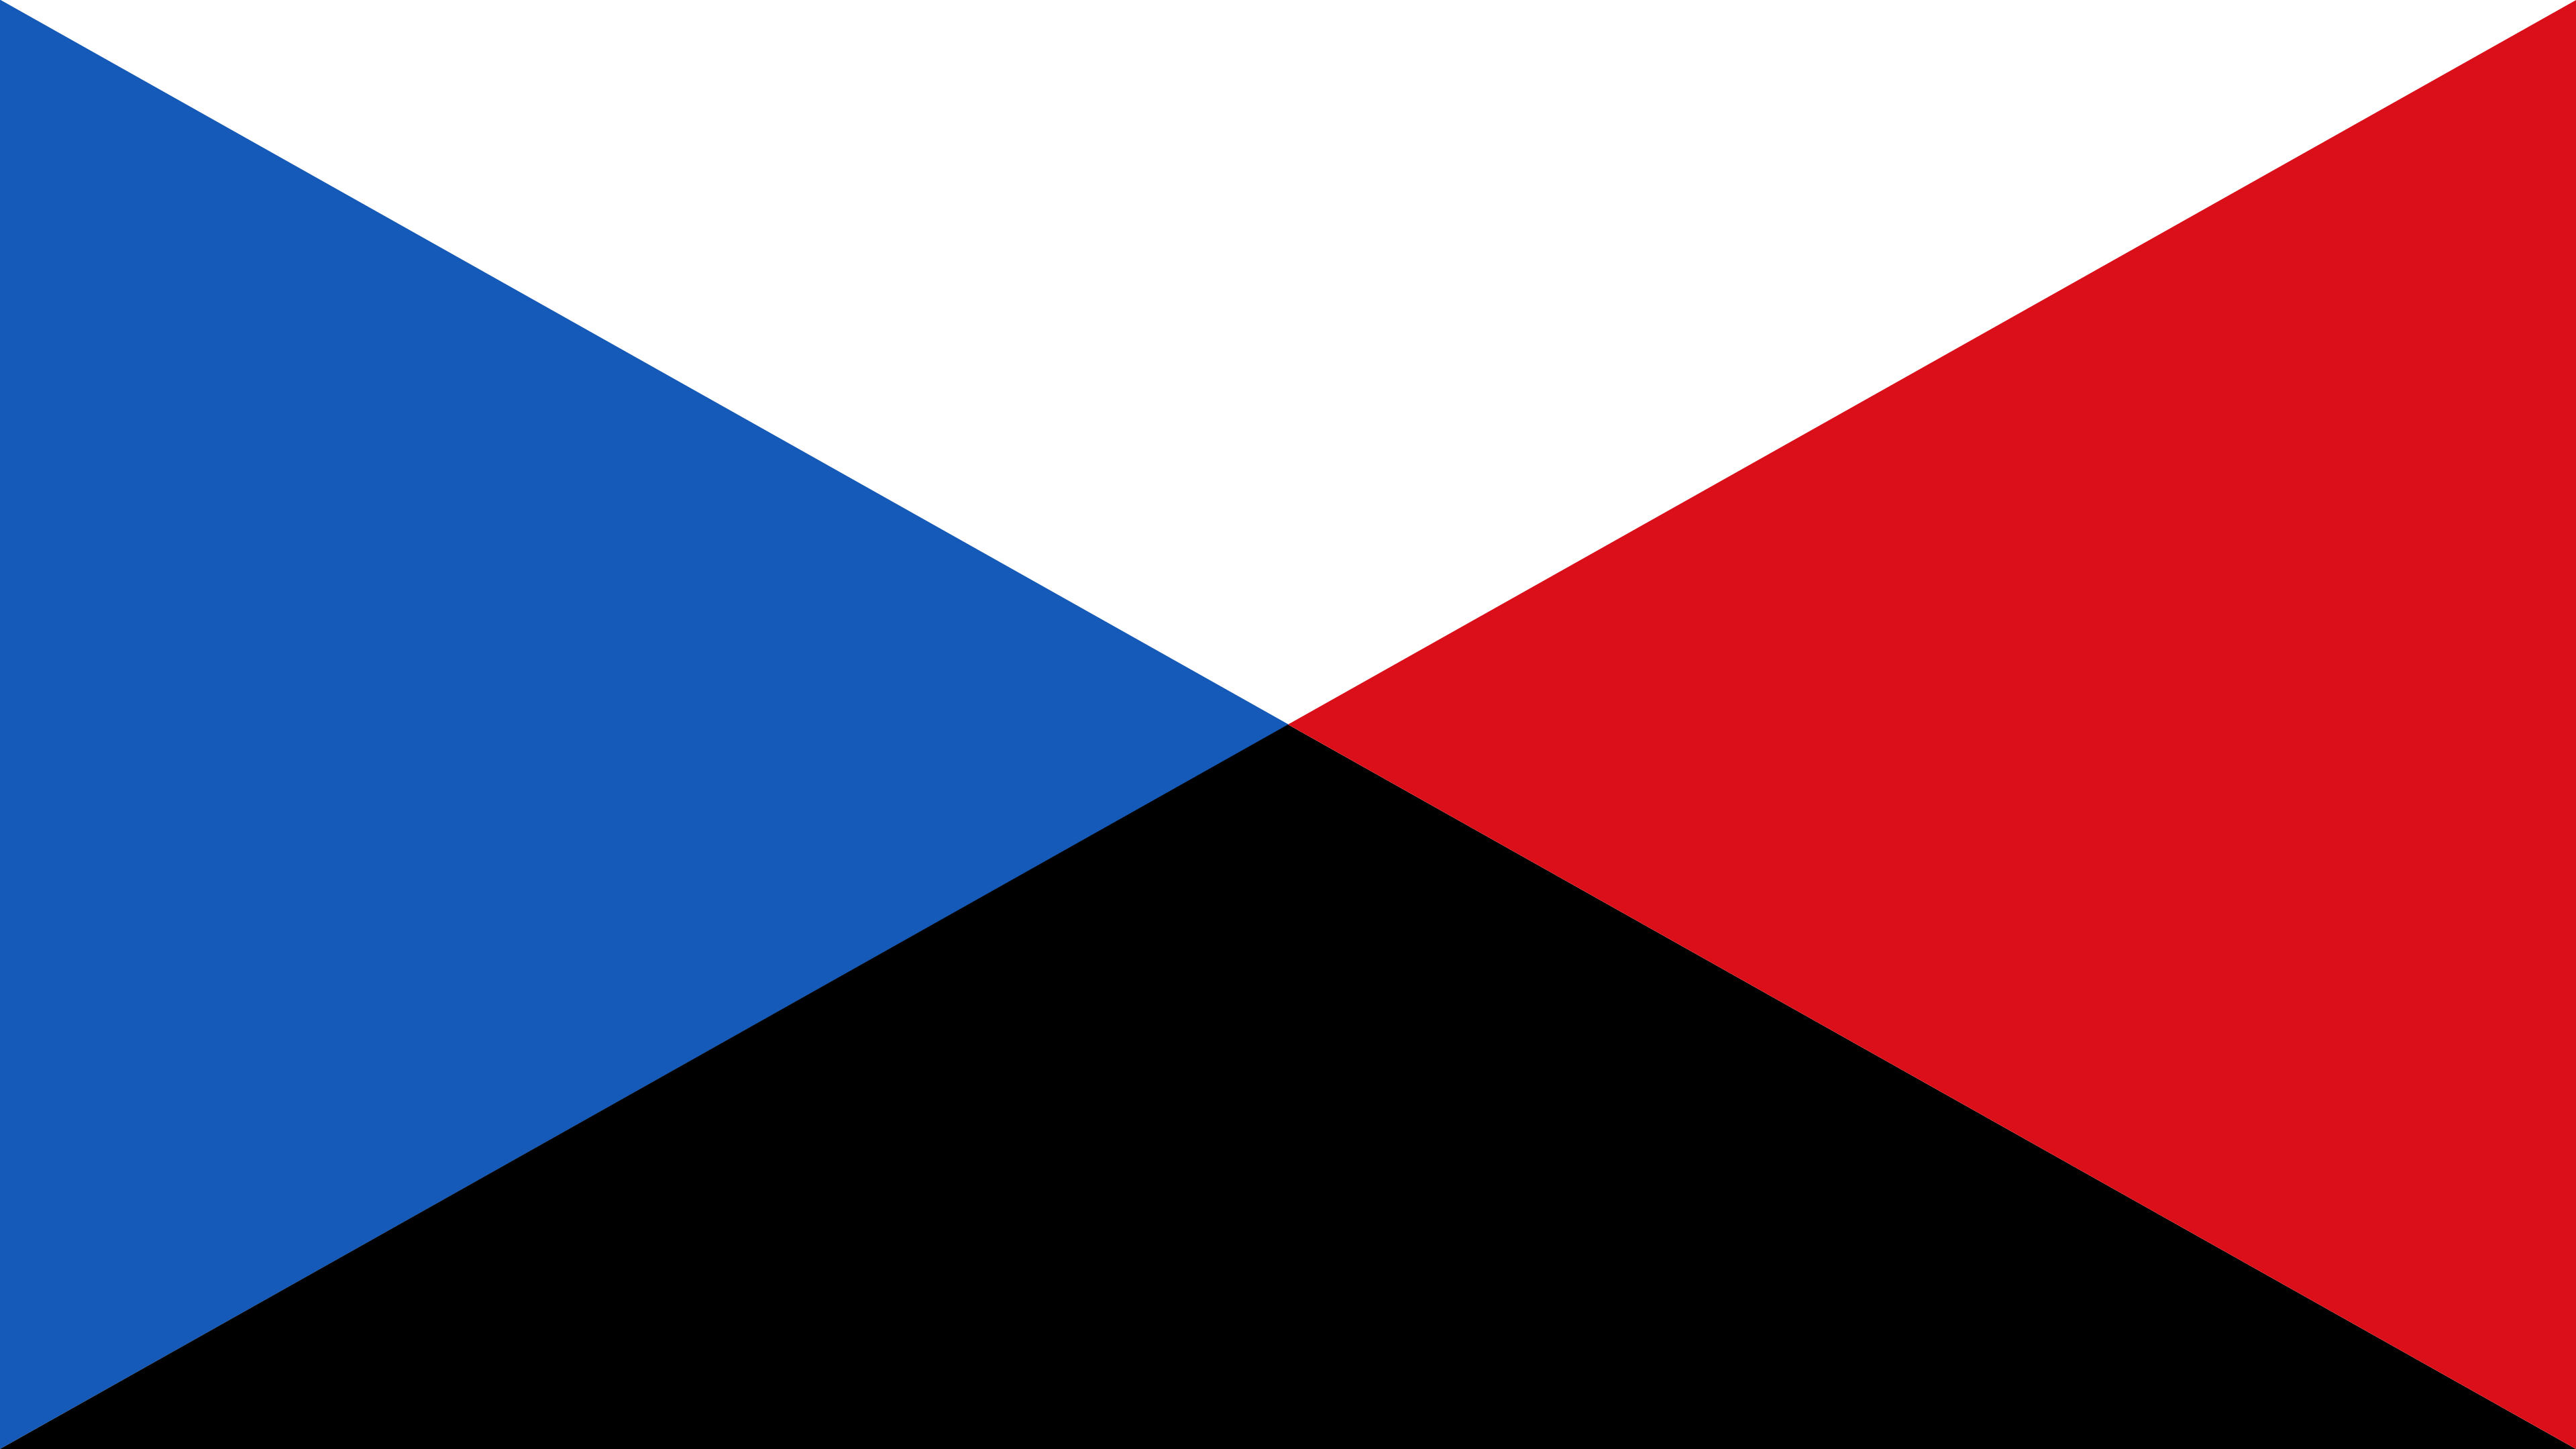 Russian State Flag (Kaiserreich - Boris Savinkov) by PeterSchulzDA